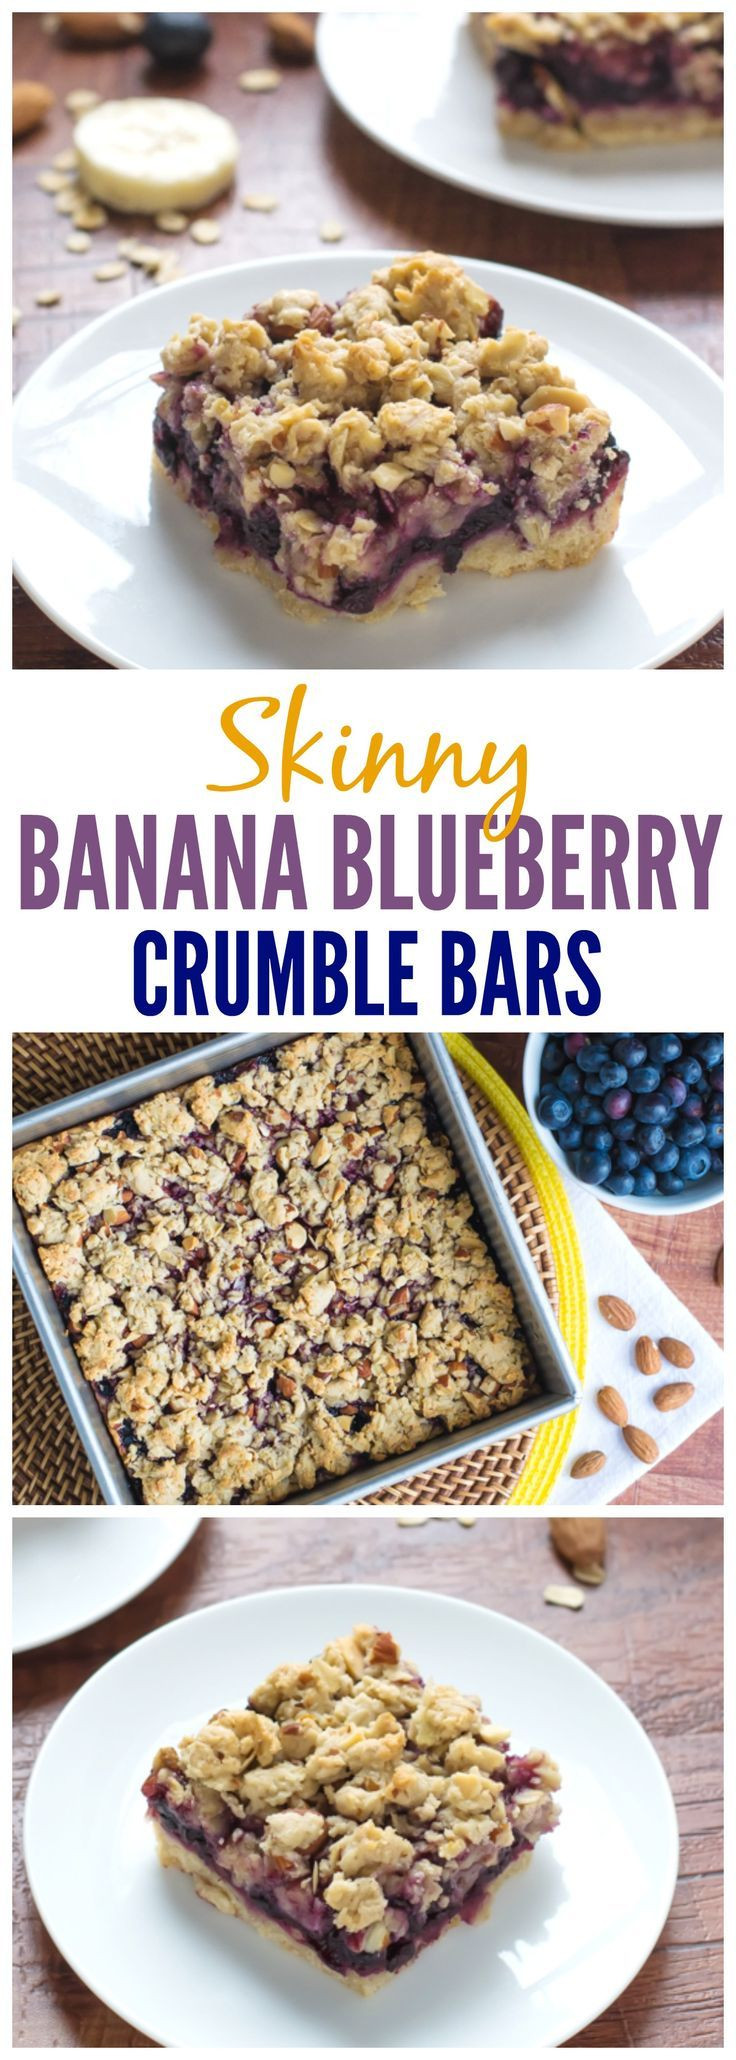 Oat Breakfast Bars Healthy
 25 best ideas about Blueberry Oatmeal Bars on Pinterest